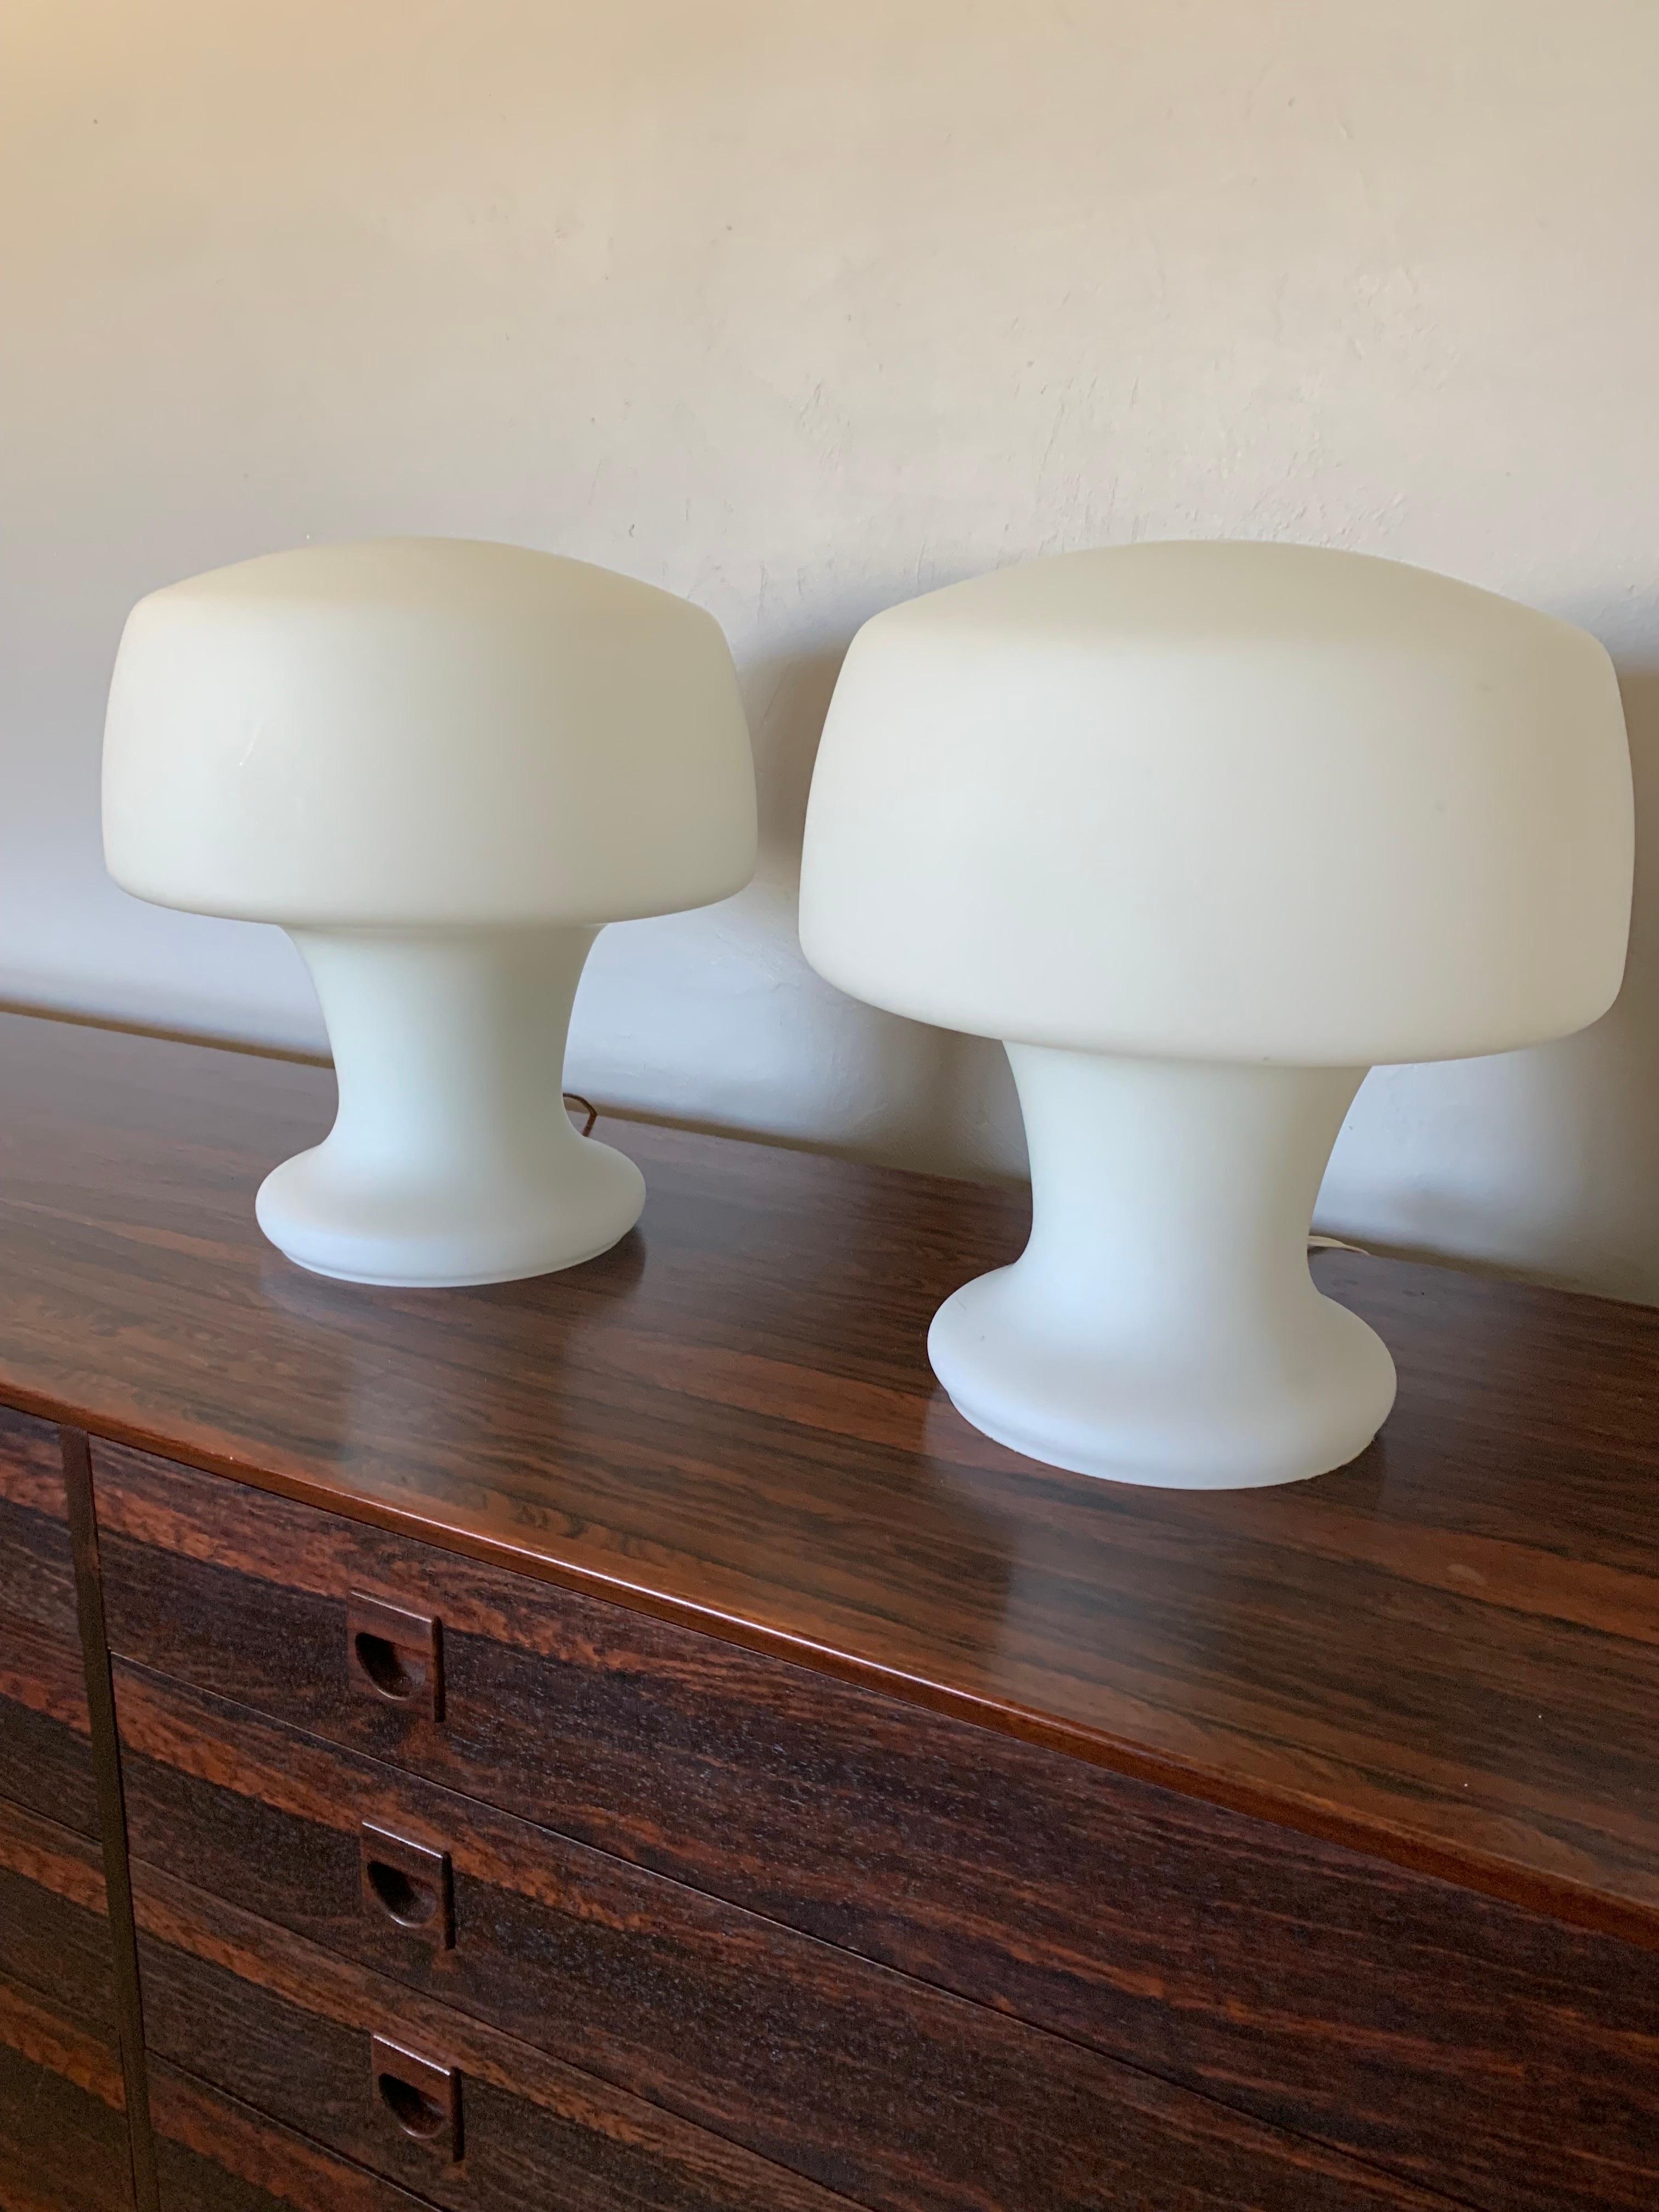 Fantastisches Paar Laurel Studio Pilz Tischlampen. Handgeblasenes opakes weißes Glas formt eine einzigartige skulpturale Pilzform. Hergestellt aus einem massiven Stück Glas mit einer Schnur und einem Schalter zum An- und Ausschalten. Trueing